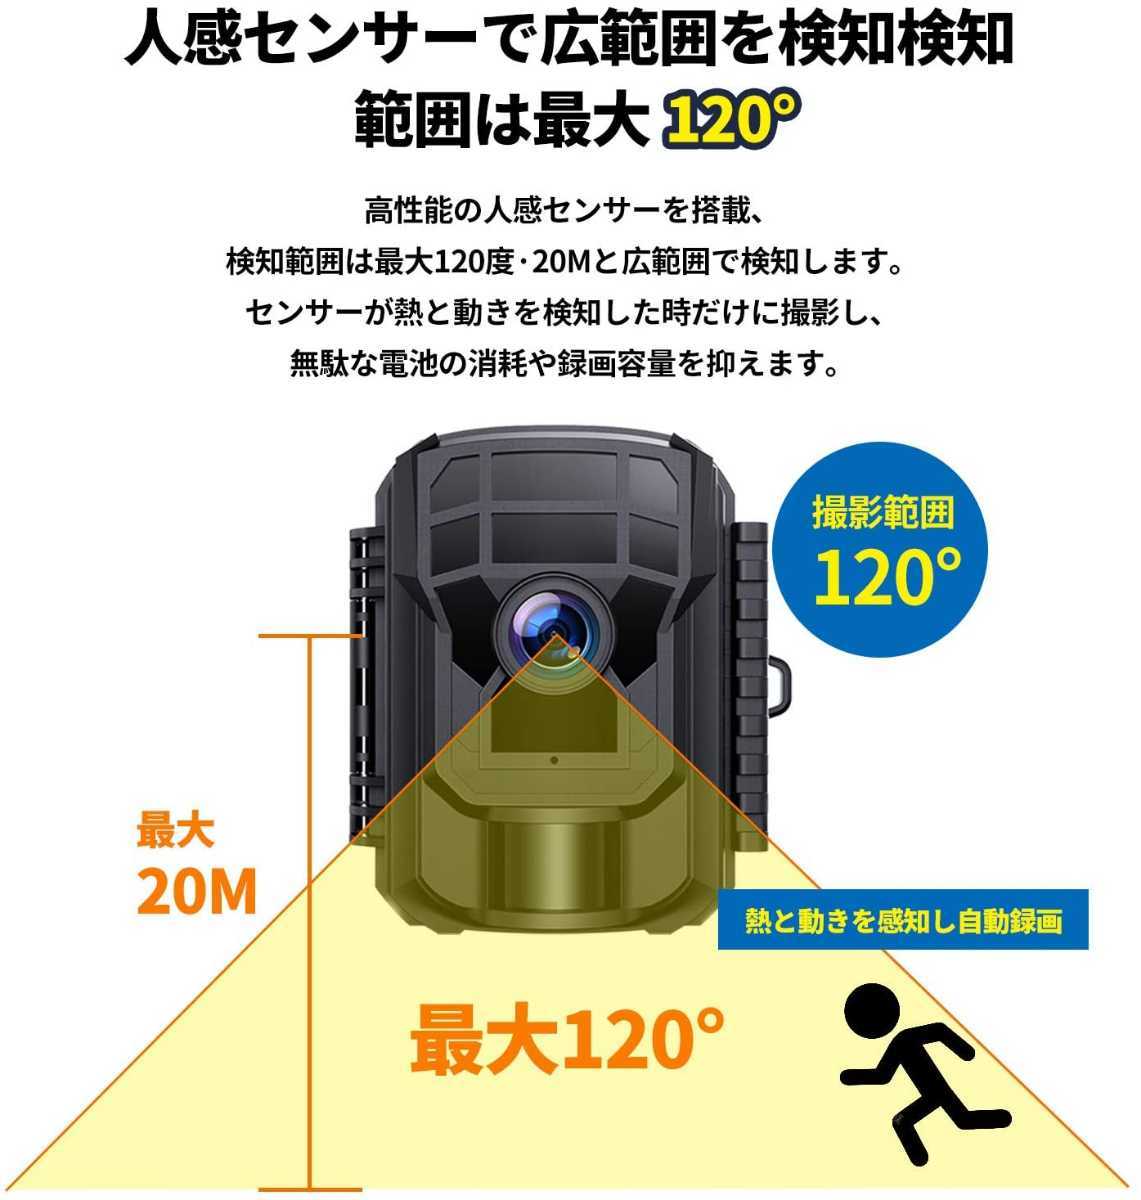 新品未開封☆屋外用トレイルカメラ☆32GB SDカード付き 動体検知 1080P&20MP 120°撮影範囲 超強防水防塵 電池式 暗視カメラ 人感センサー